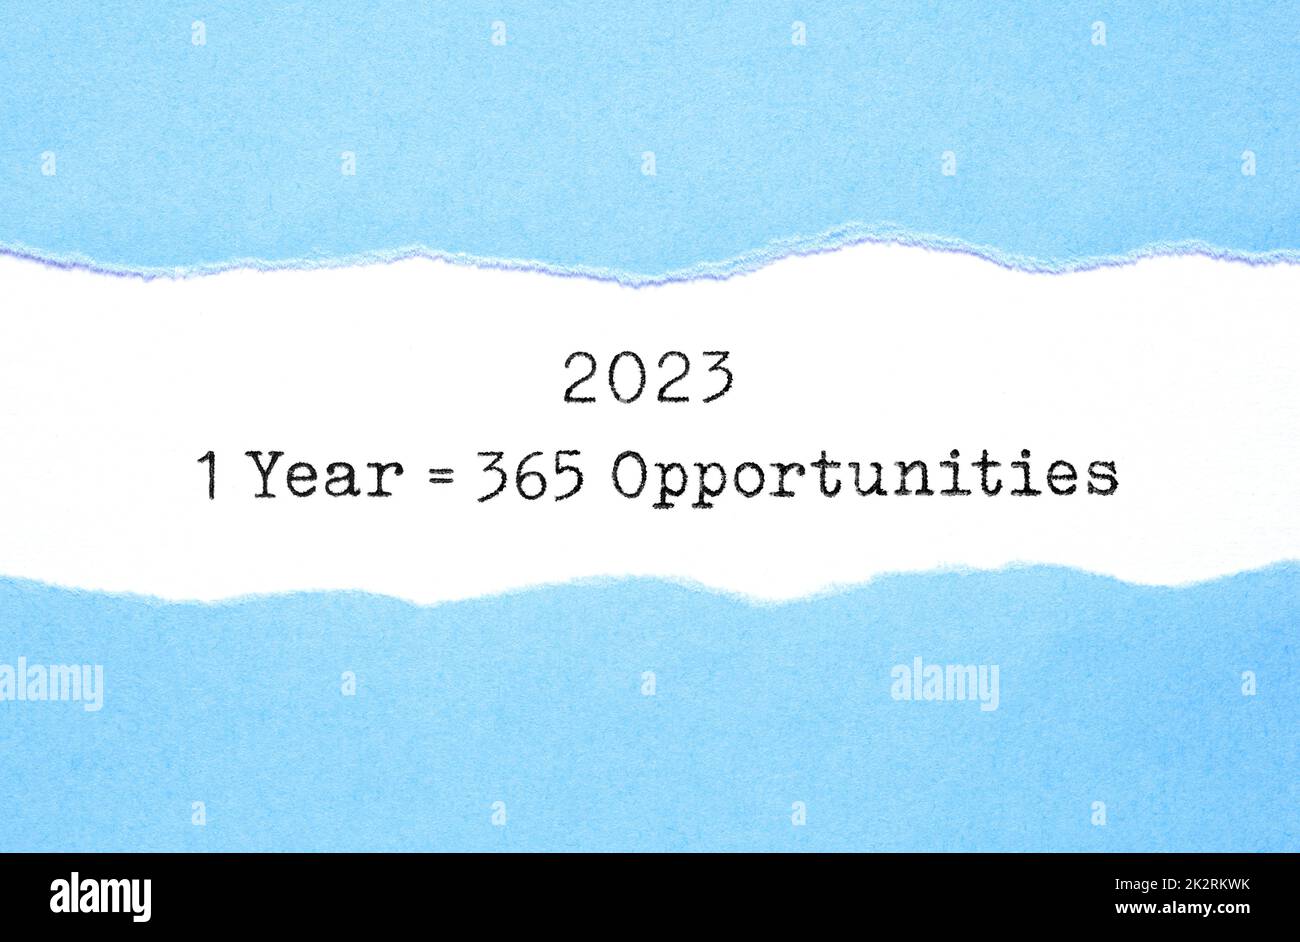 Cita inspiradora 1 Año 2023 Igual a 365 oportunidades que aparecen detrás del papel azul rasgado. Nuevo concepto motivacional del comienzo. Foto de stock